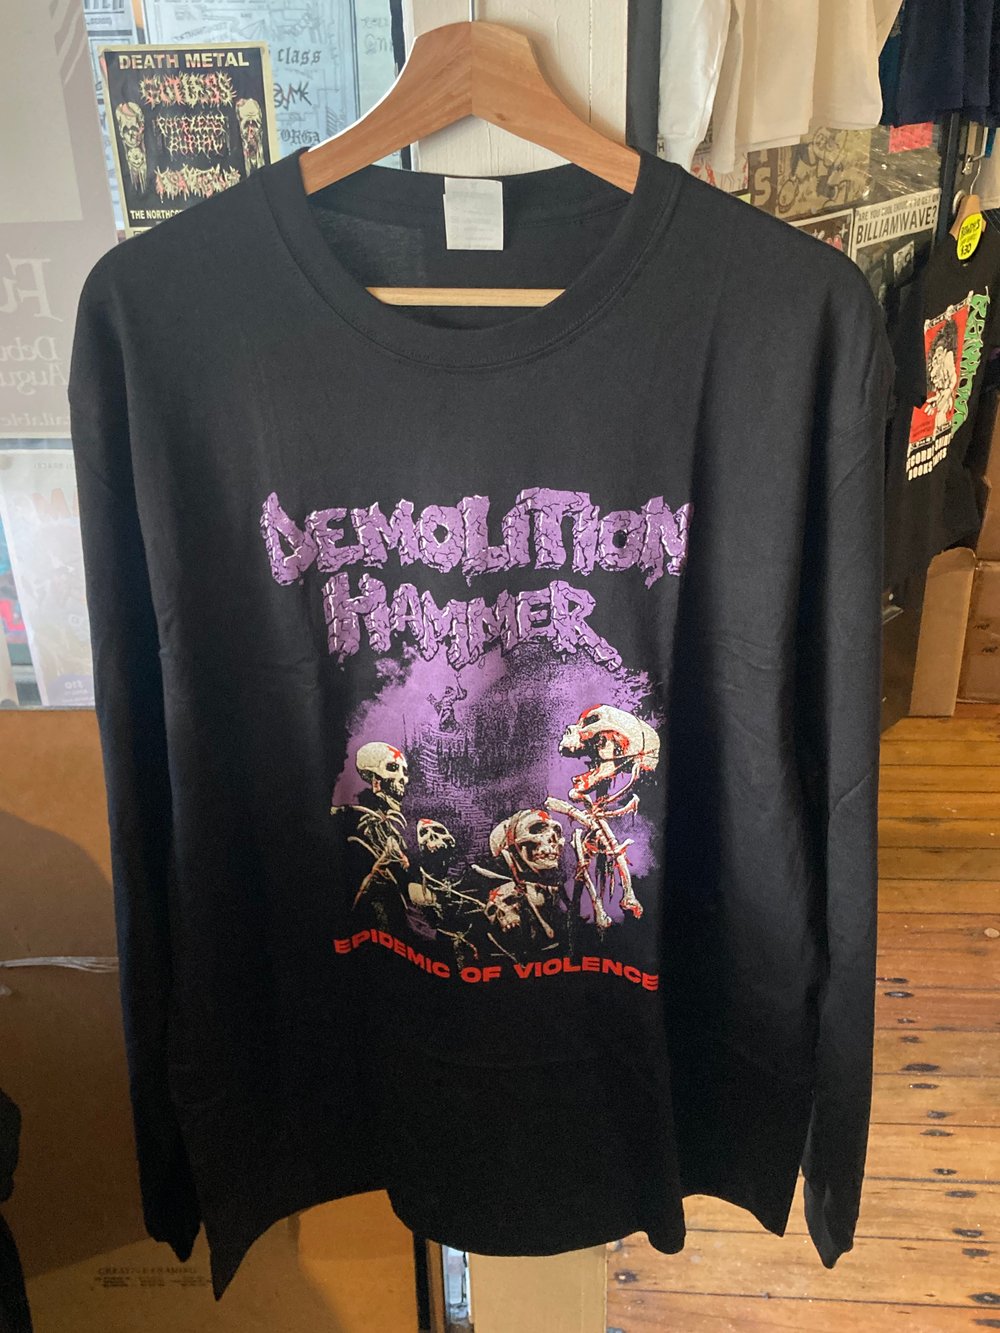 Demolition Hammer - Epidemic of Violence L/S Shirt 